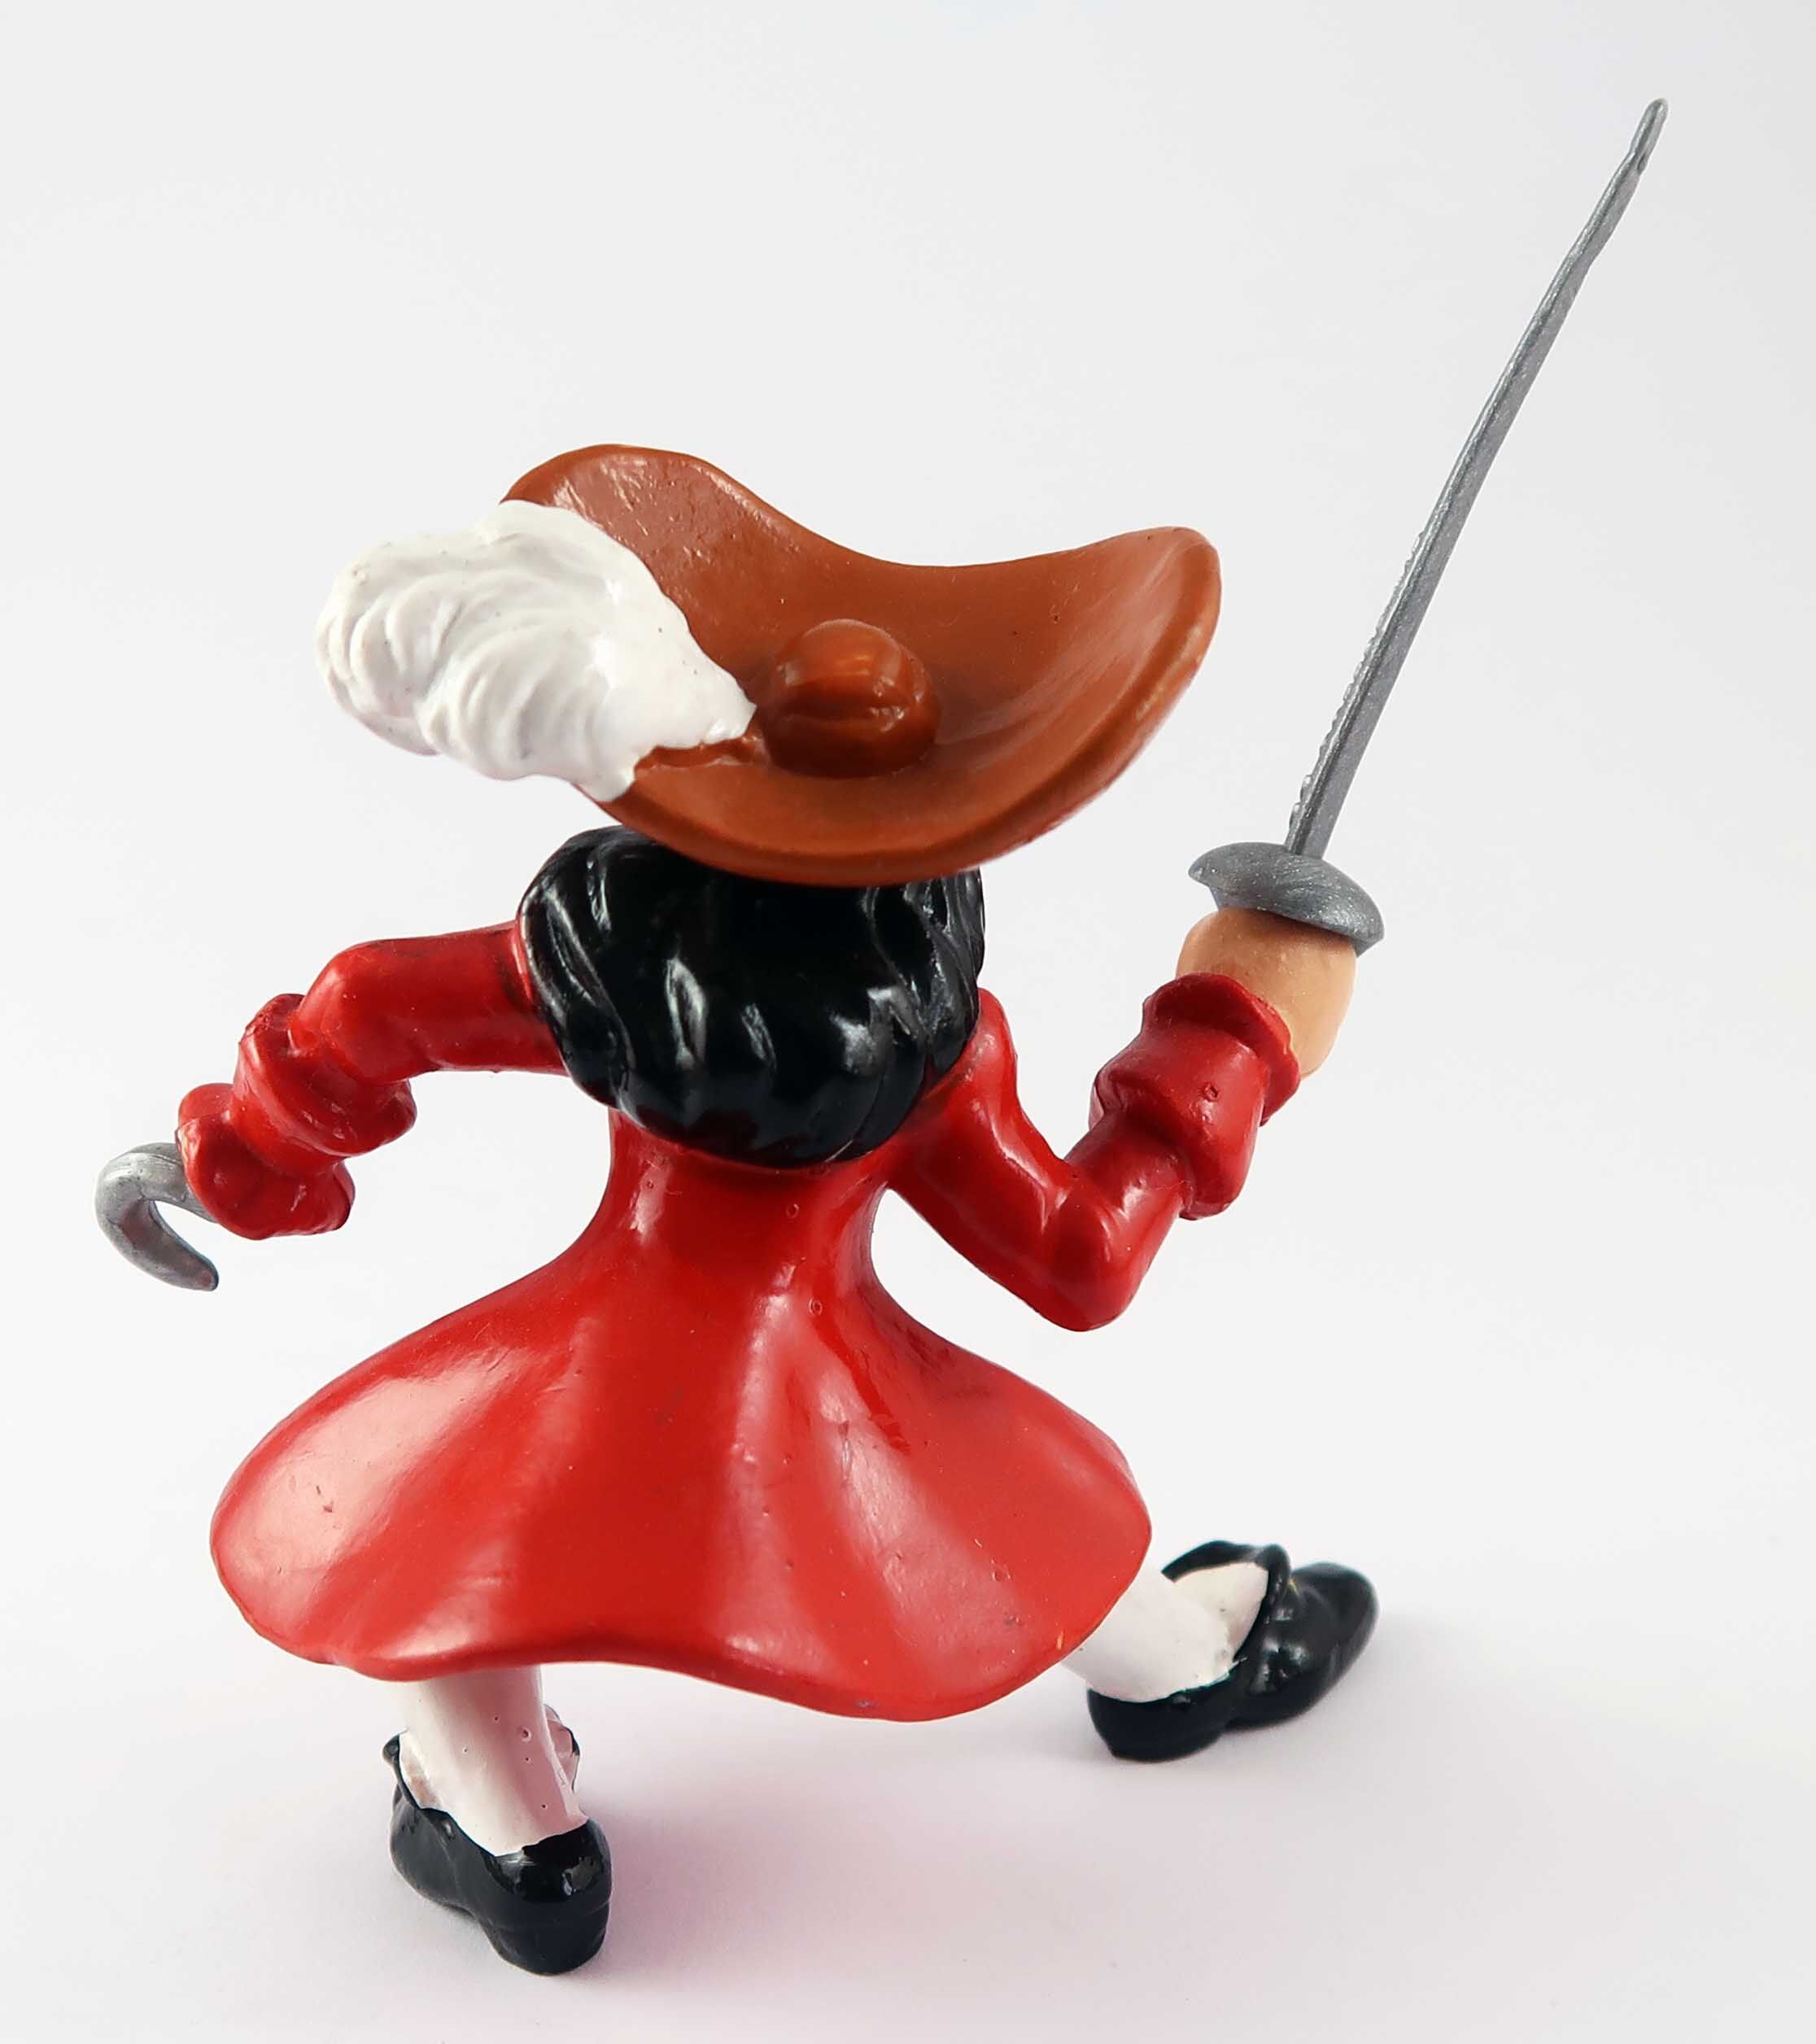 Peter Pan Captain Hook PVC Figur